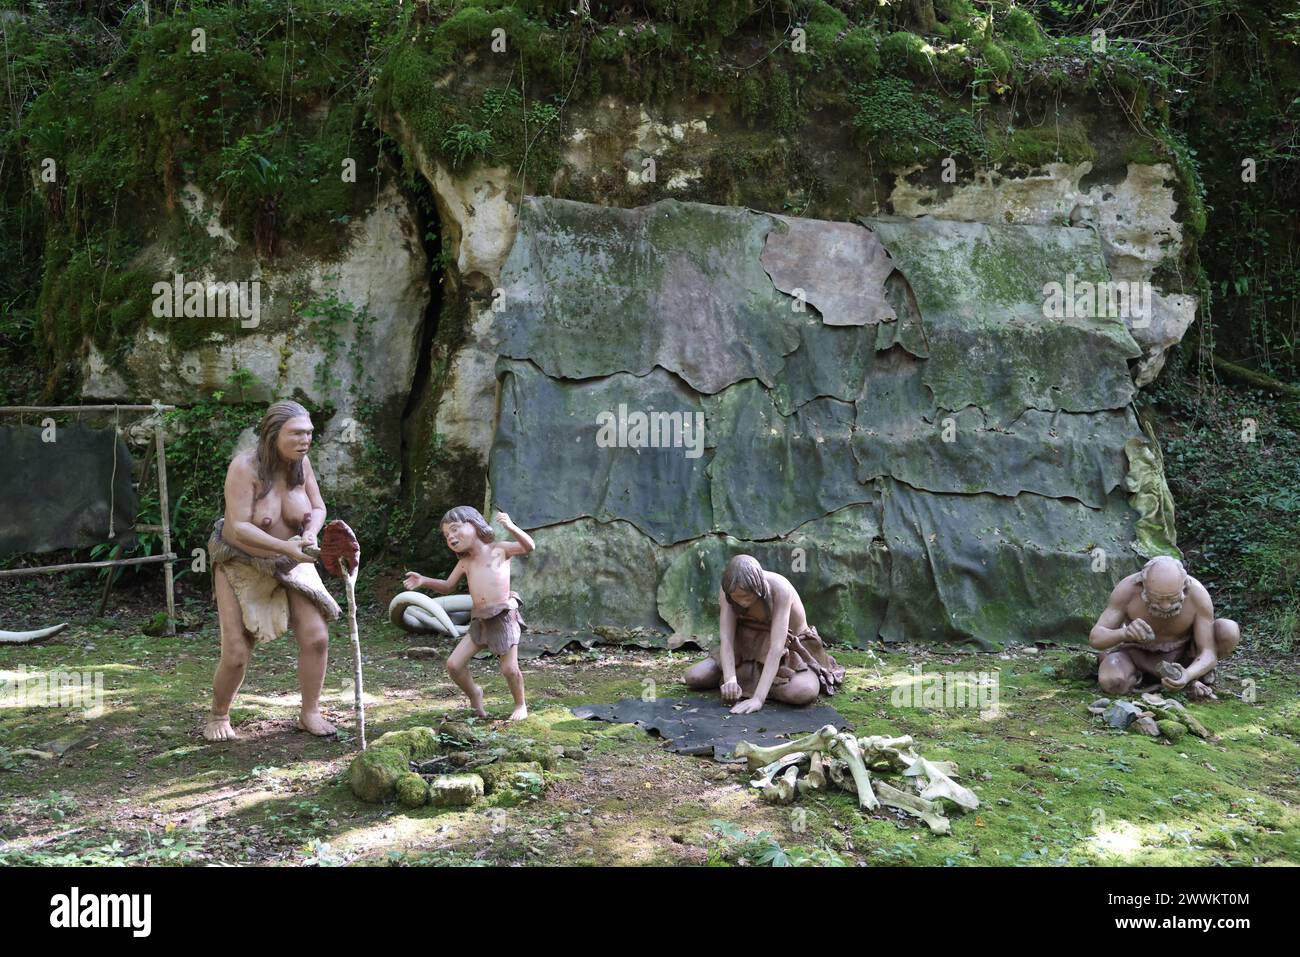 Scène de vie durant la préhistoire reconstruite au Parc Préhisto dans la vallée de la Vézère en Périgord Noir dans la région des grottes de Lascaux. Tursac, Pér Banque D'Images